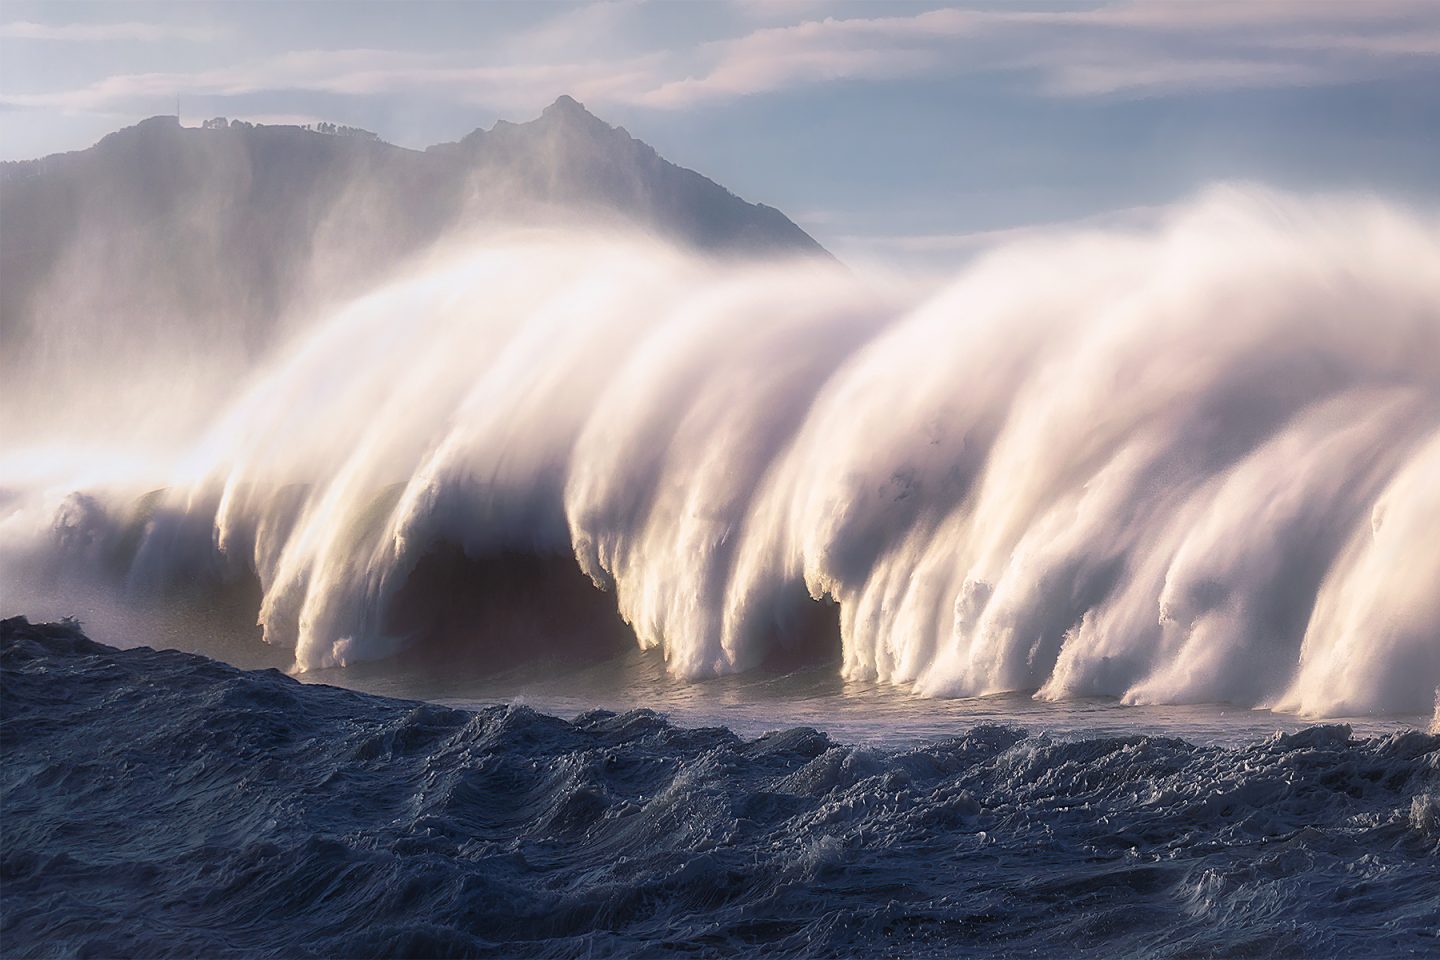 في السيناريو الأسوأ: نيوزيلندا تحت خطر موجات تسونامي تصل إلى 28 مترًا بسبب الزلازل